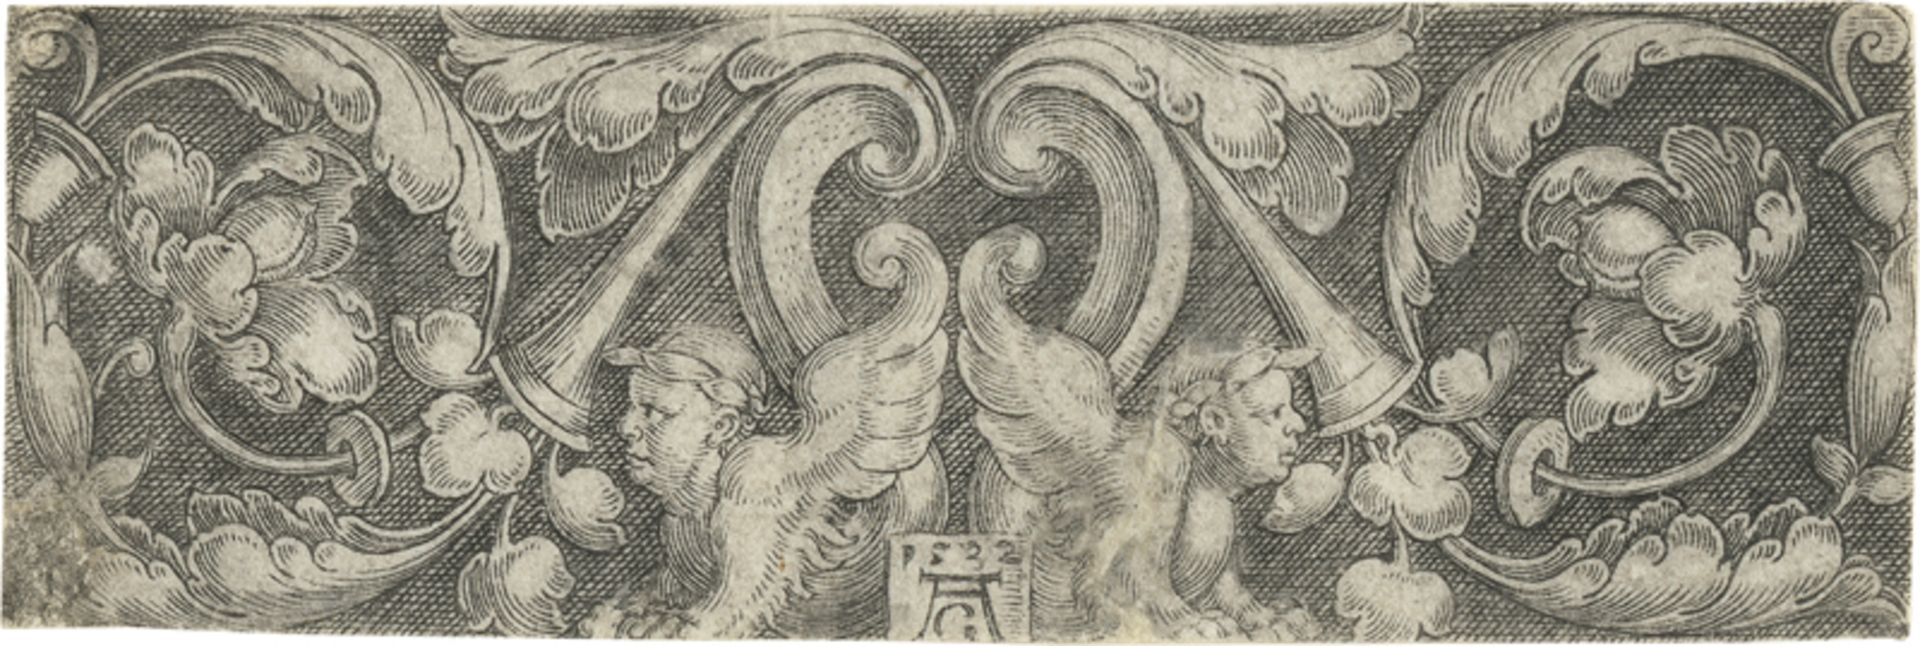 Aldegrever, Heinrich: Ornament mit zwei Sphinxen